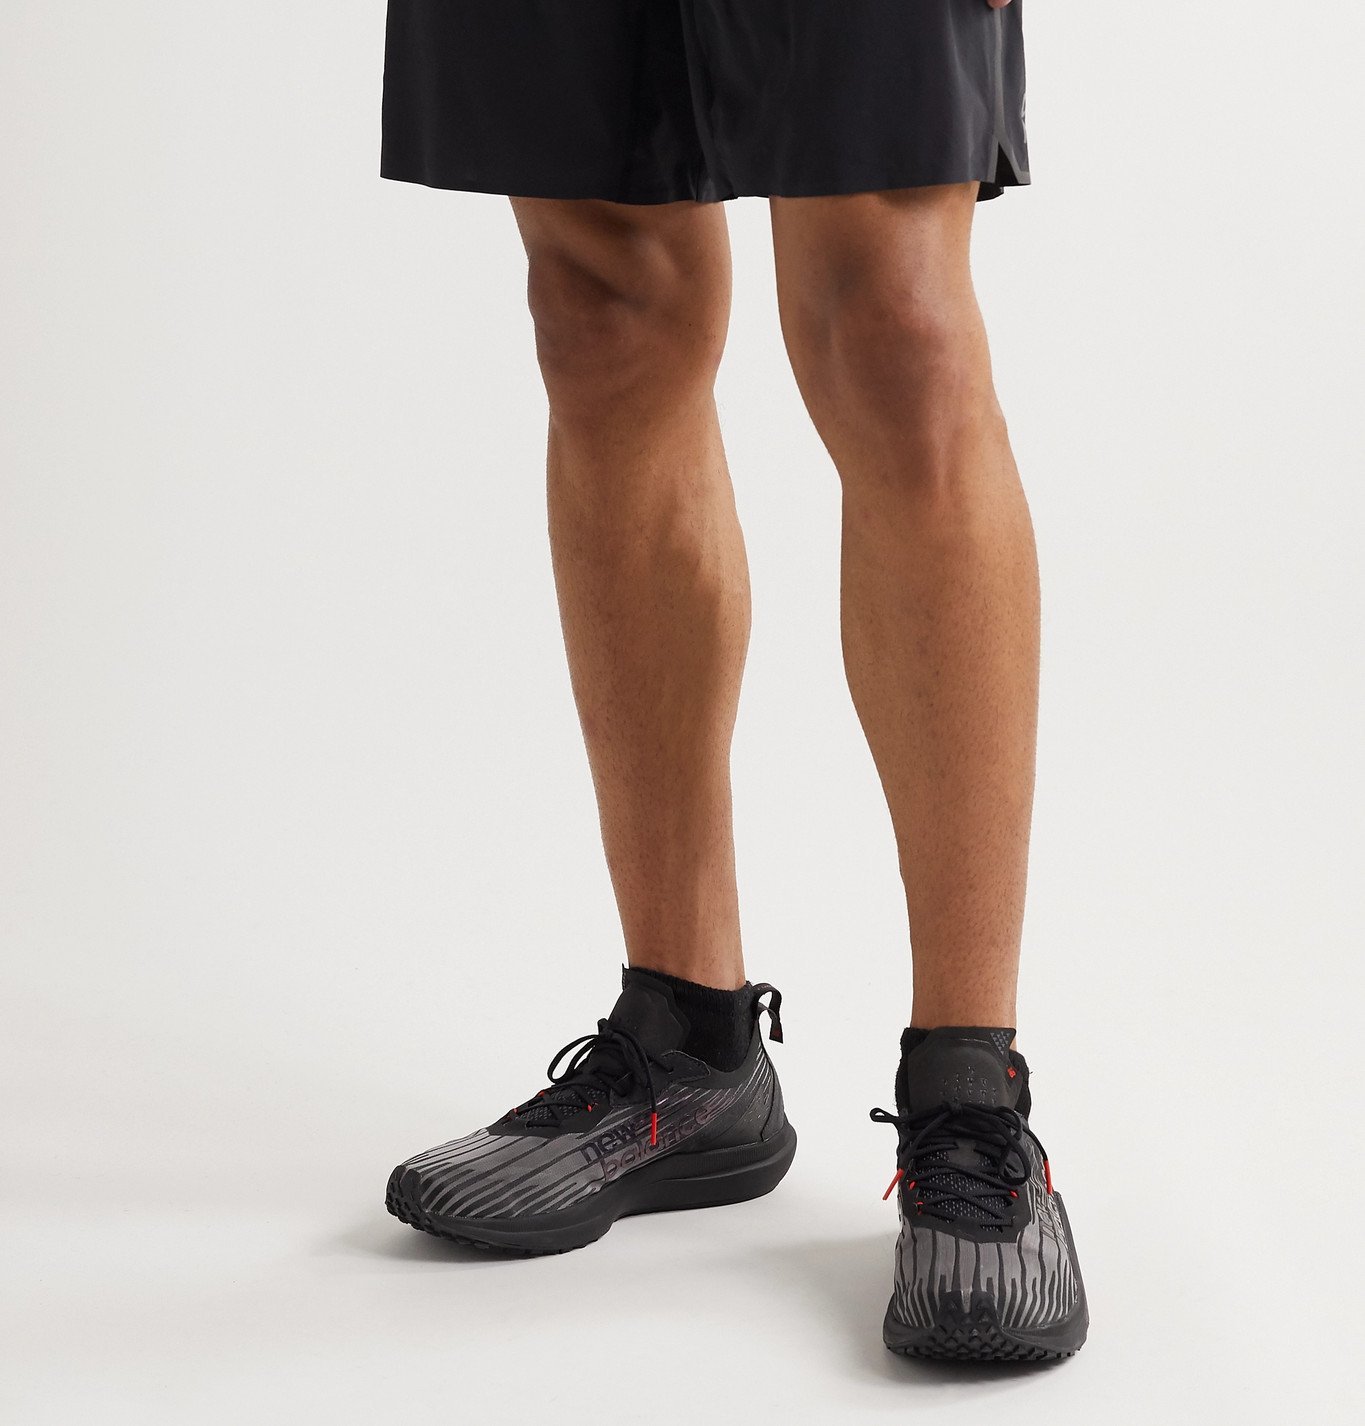 New Balance - FuelCell Speedrift Felt-Trimmed Woven Running Sneakers - Black